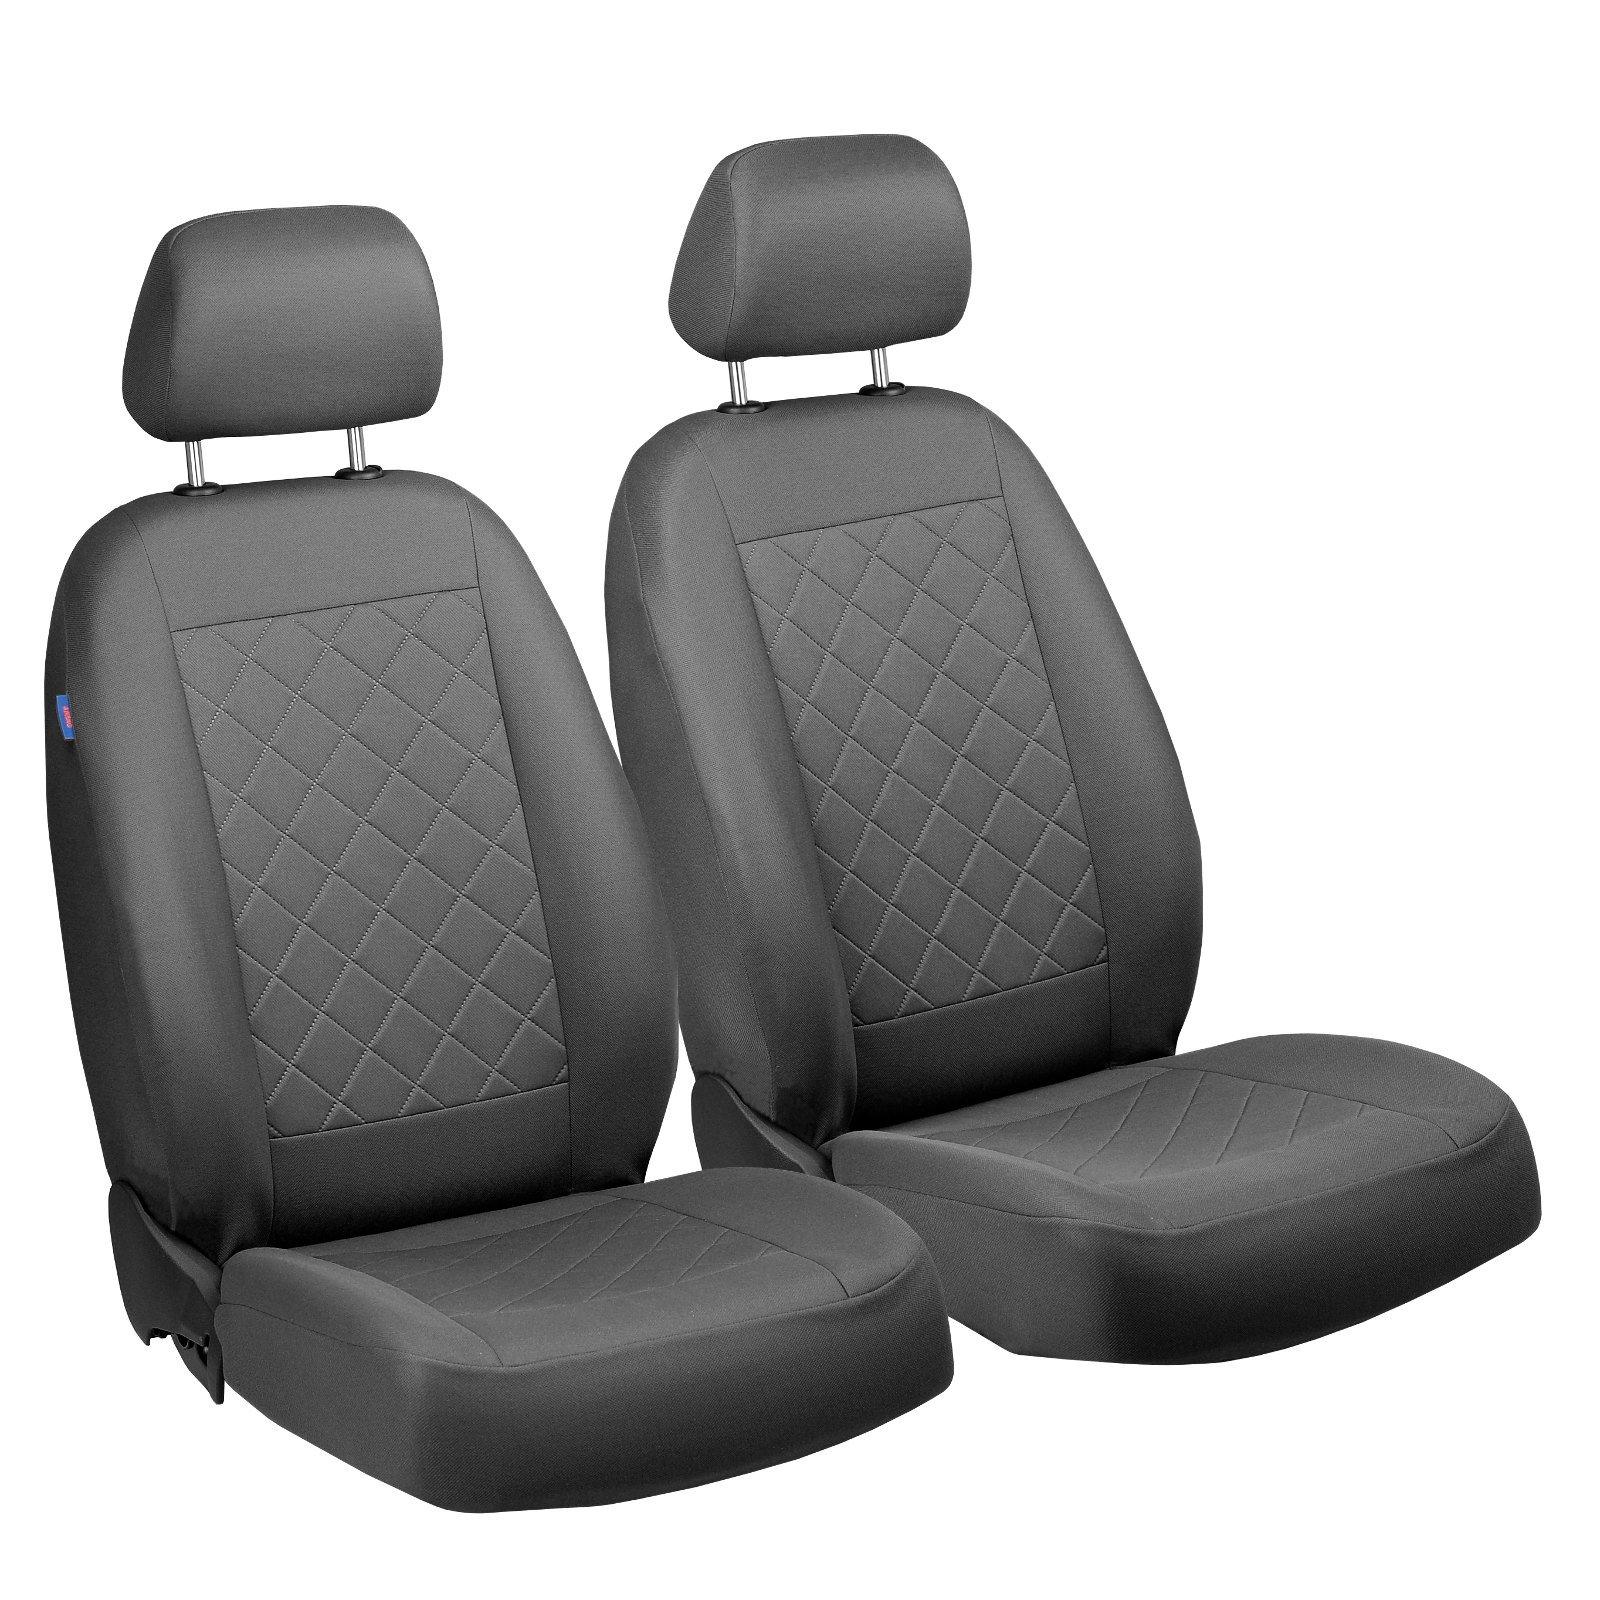 Sebring Vorne Sitzbezüge - für Fahrer und Beifahrer - Farbe Premium Grau Gepresstes Karomuster